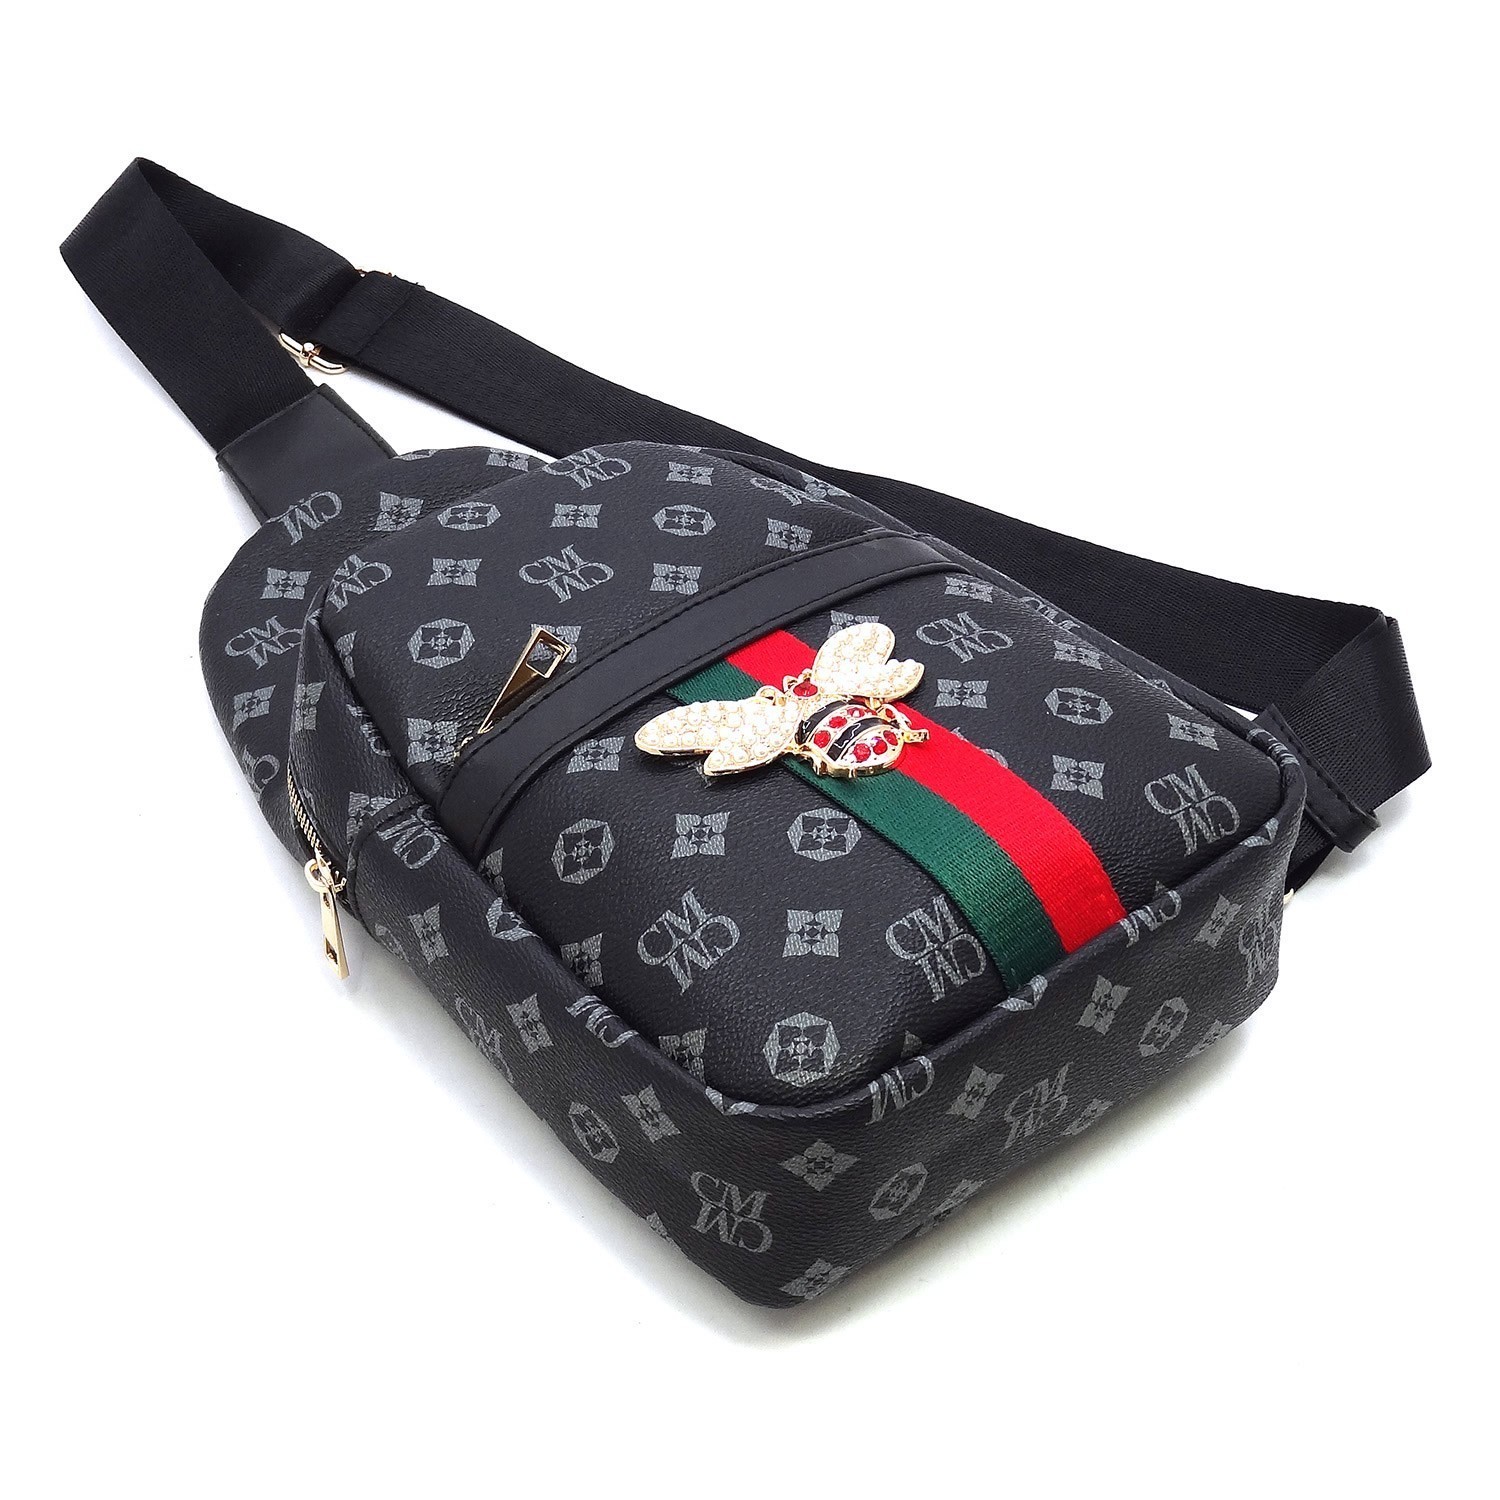 Trendy Queen Bee Stripe Monogram Sling Backpack HF-CS750B > Classic Bags,  Monogram > Mezon Handbags